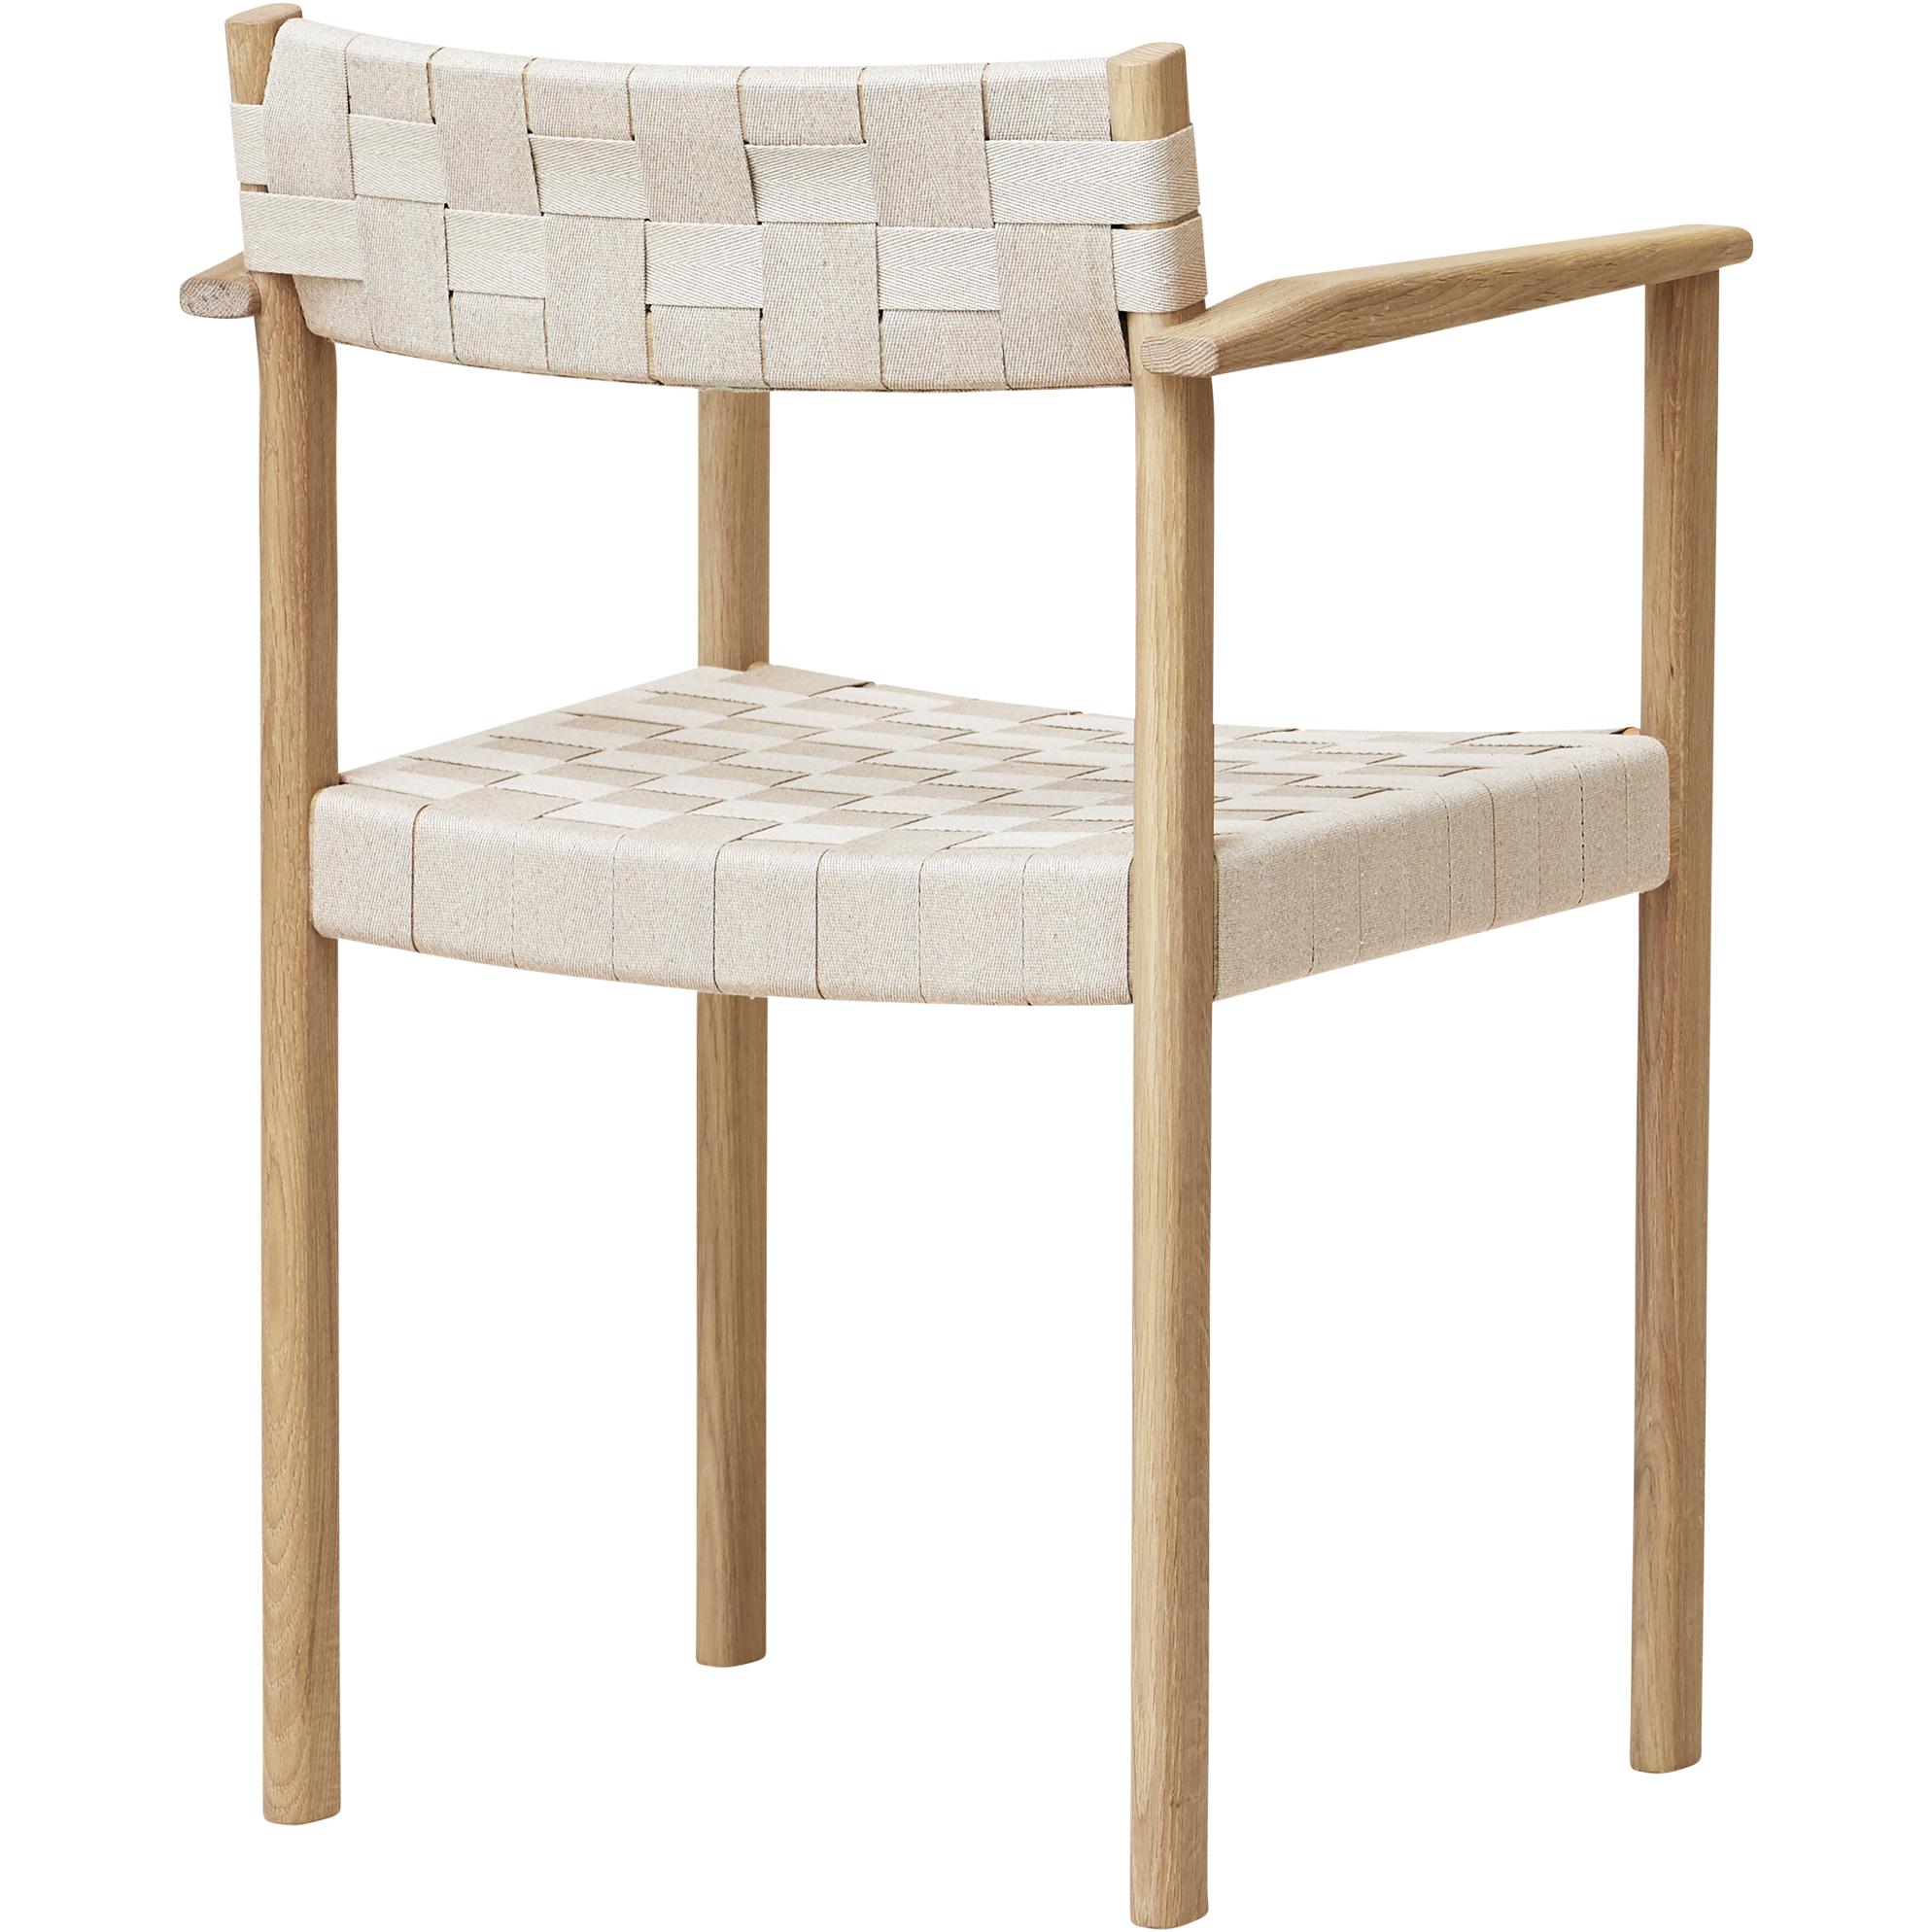 形式和完善的主题扶手椅。白油橡木